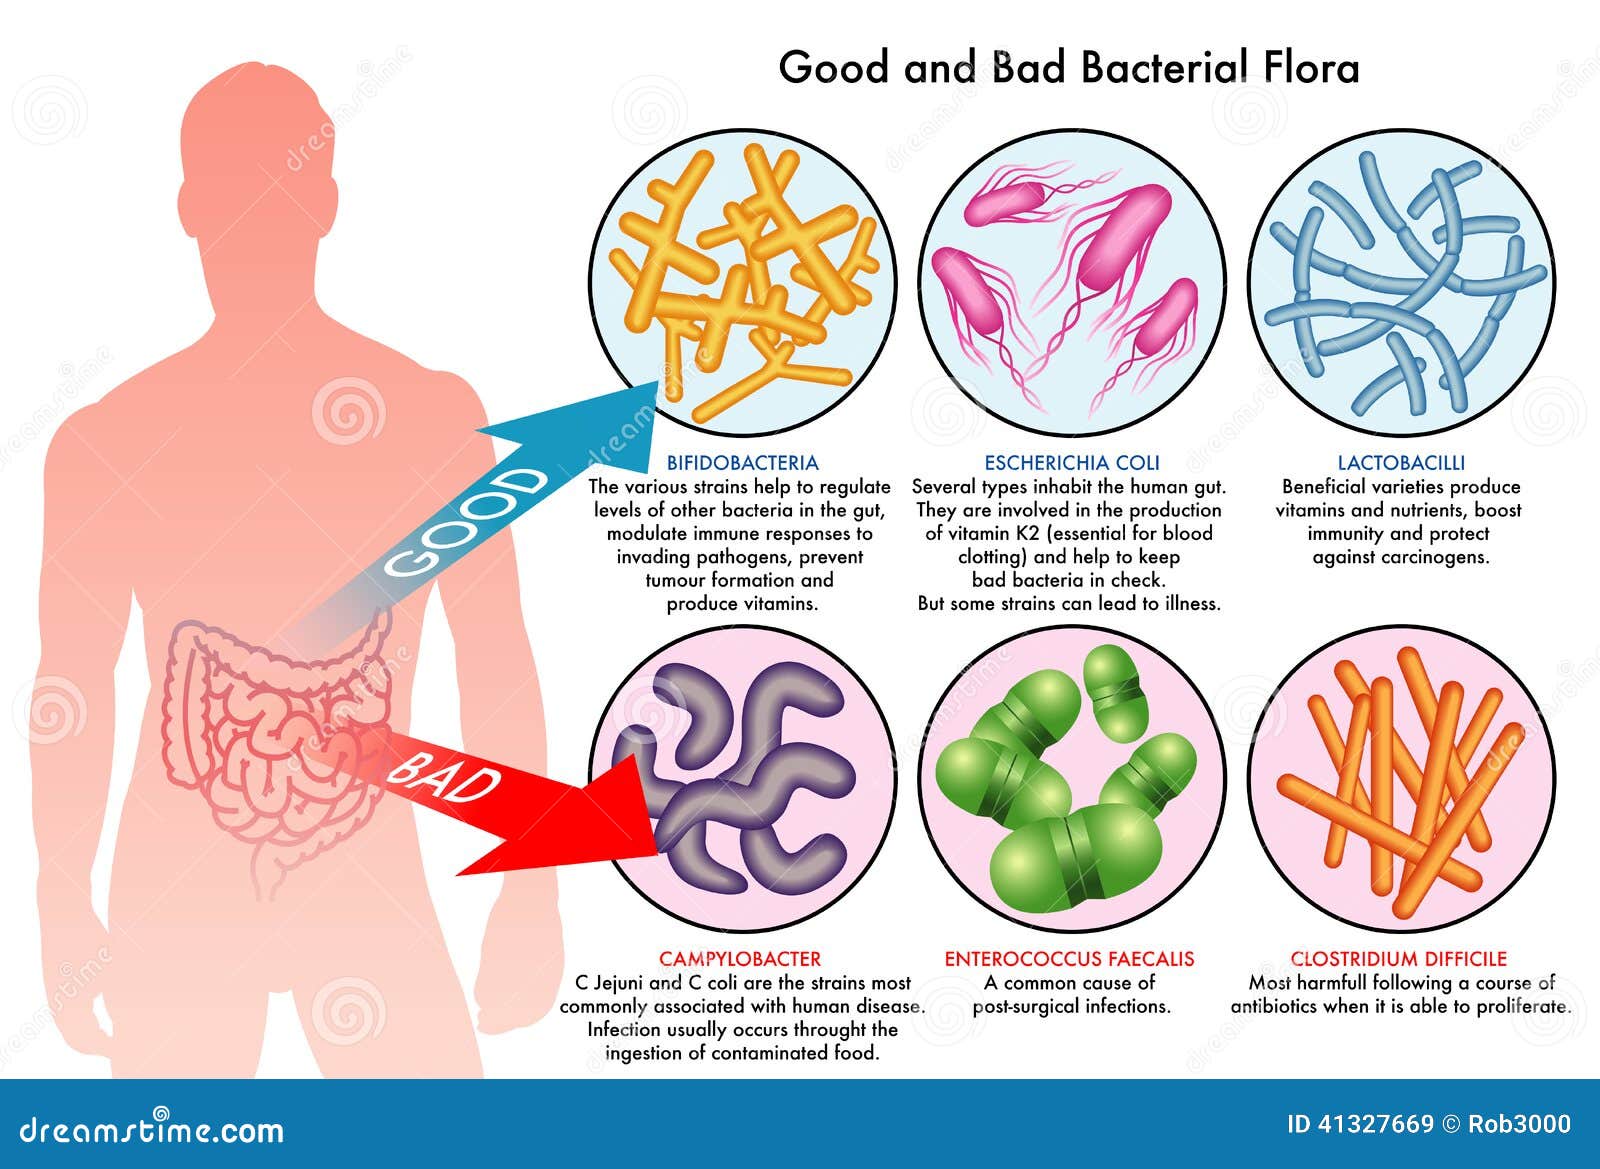 intestinal bacterial flora